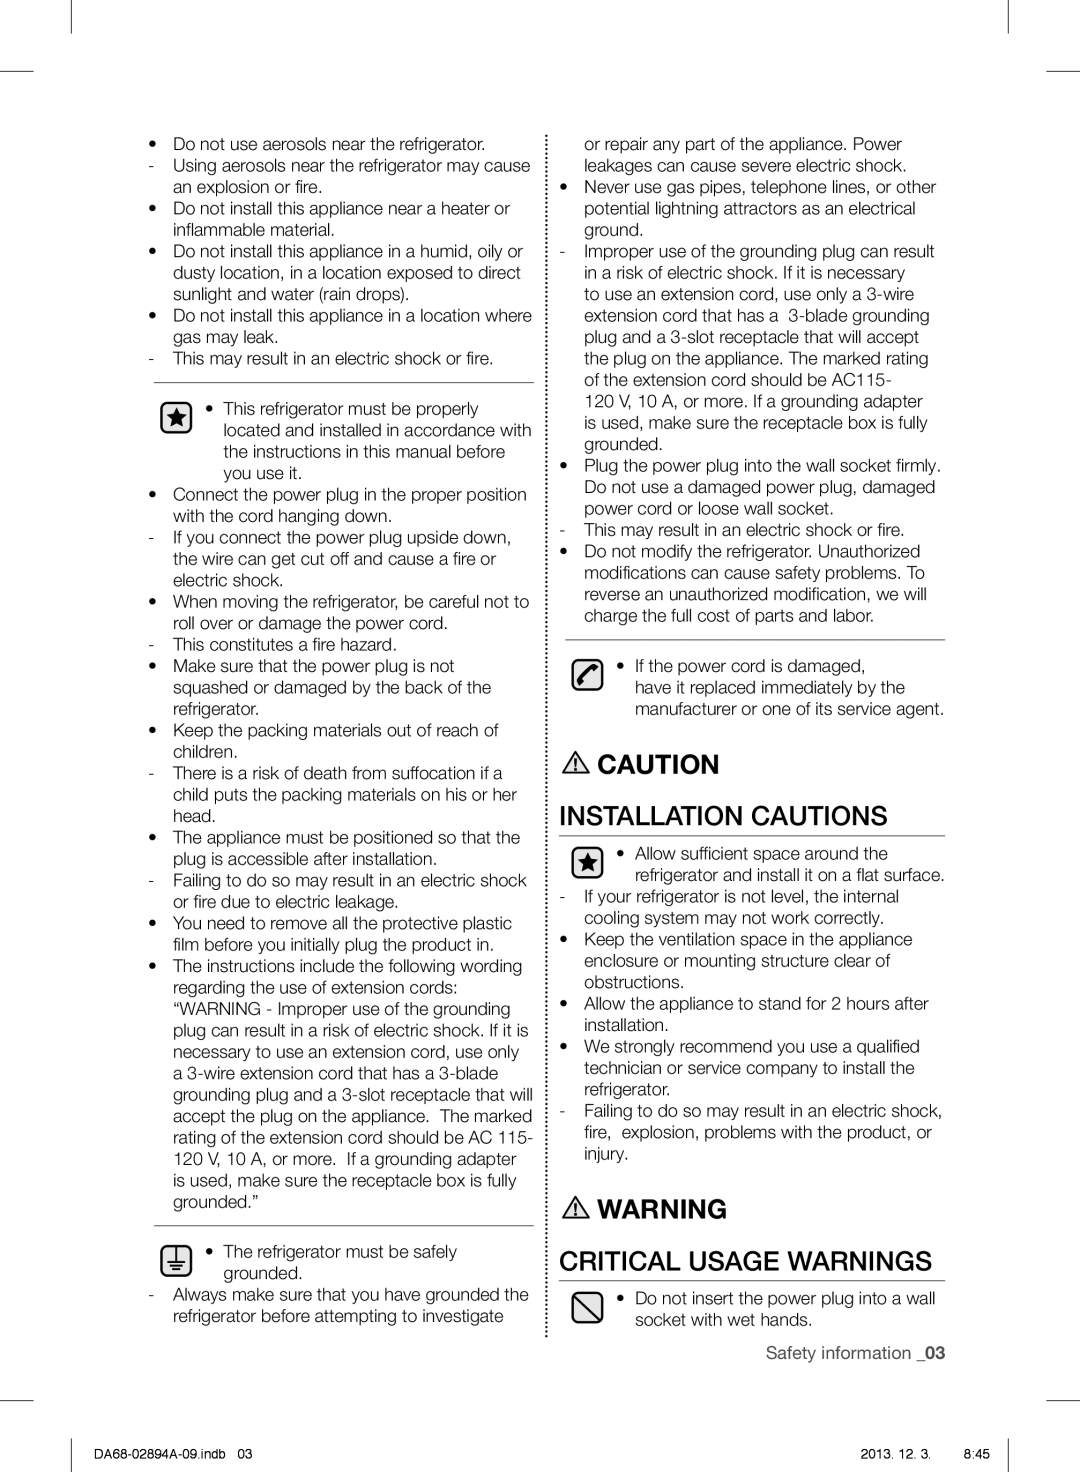 Samsung RF31FMEDBSR, RF31FMESBSR, RF31FMEDBBC user manual Installation Cautions, Critical Usage Warnings, Safety information 